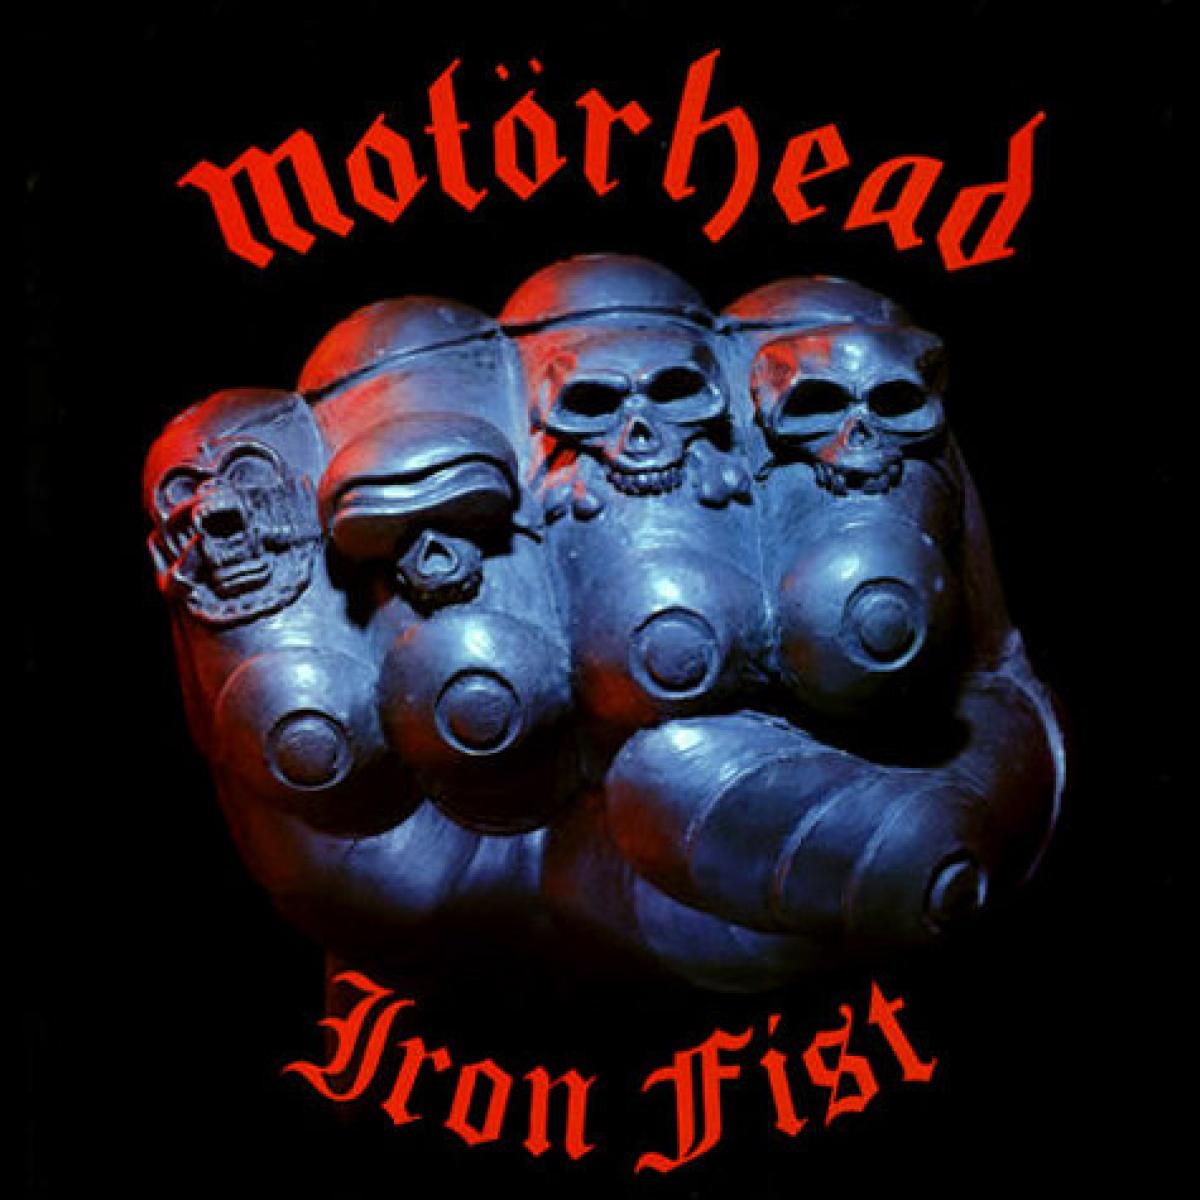 CD Motorhead - Iron Fist - 1982